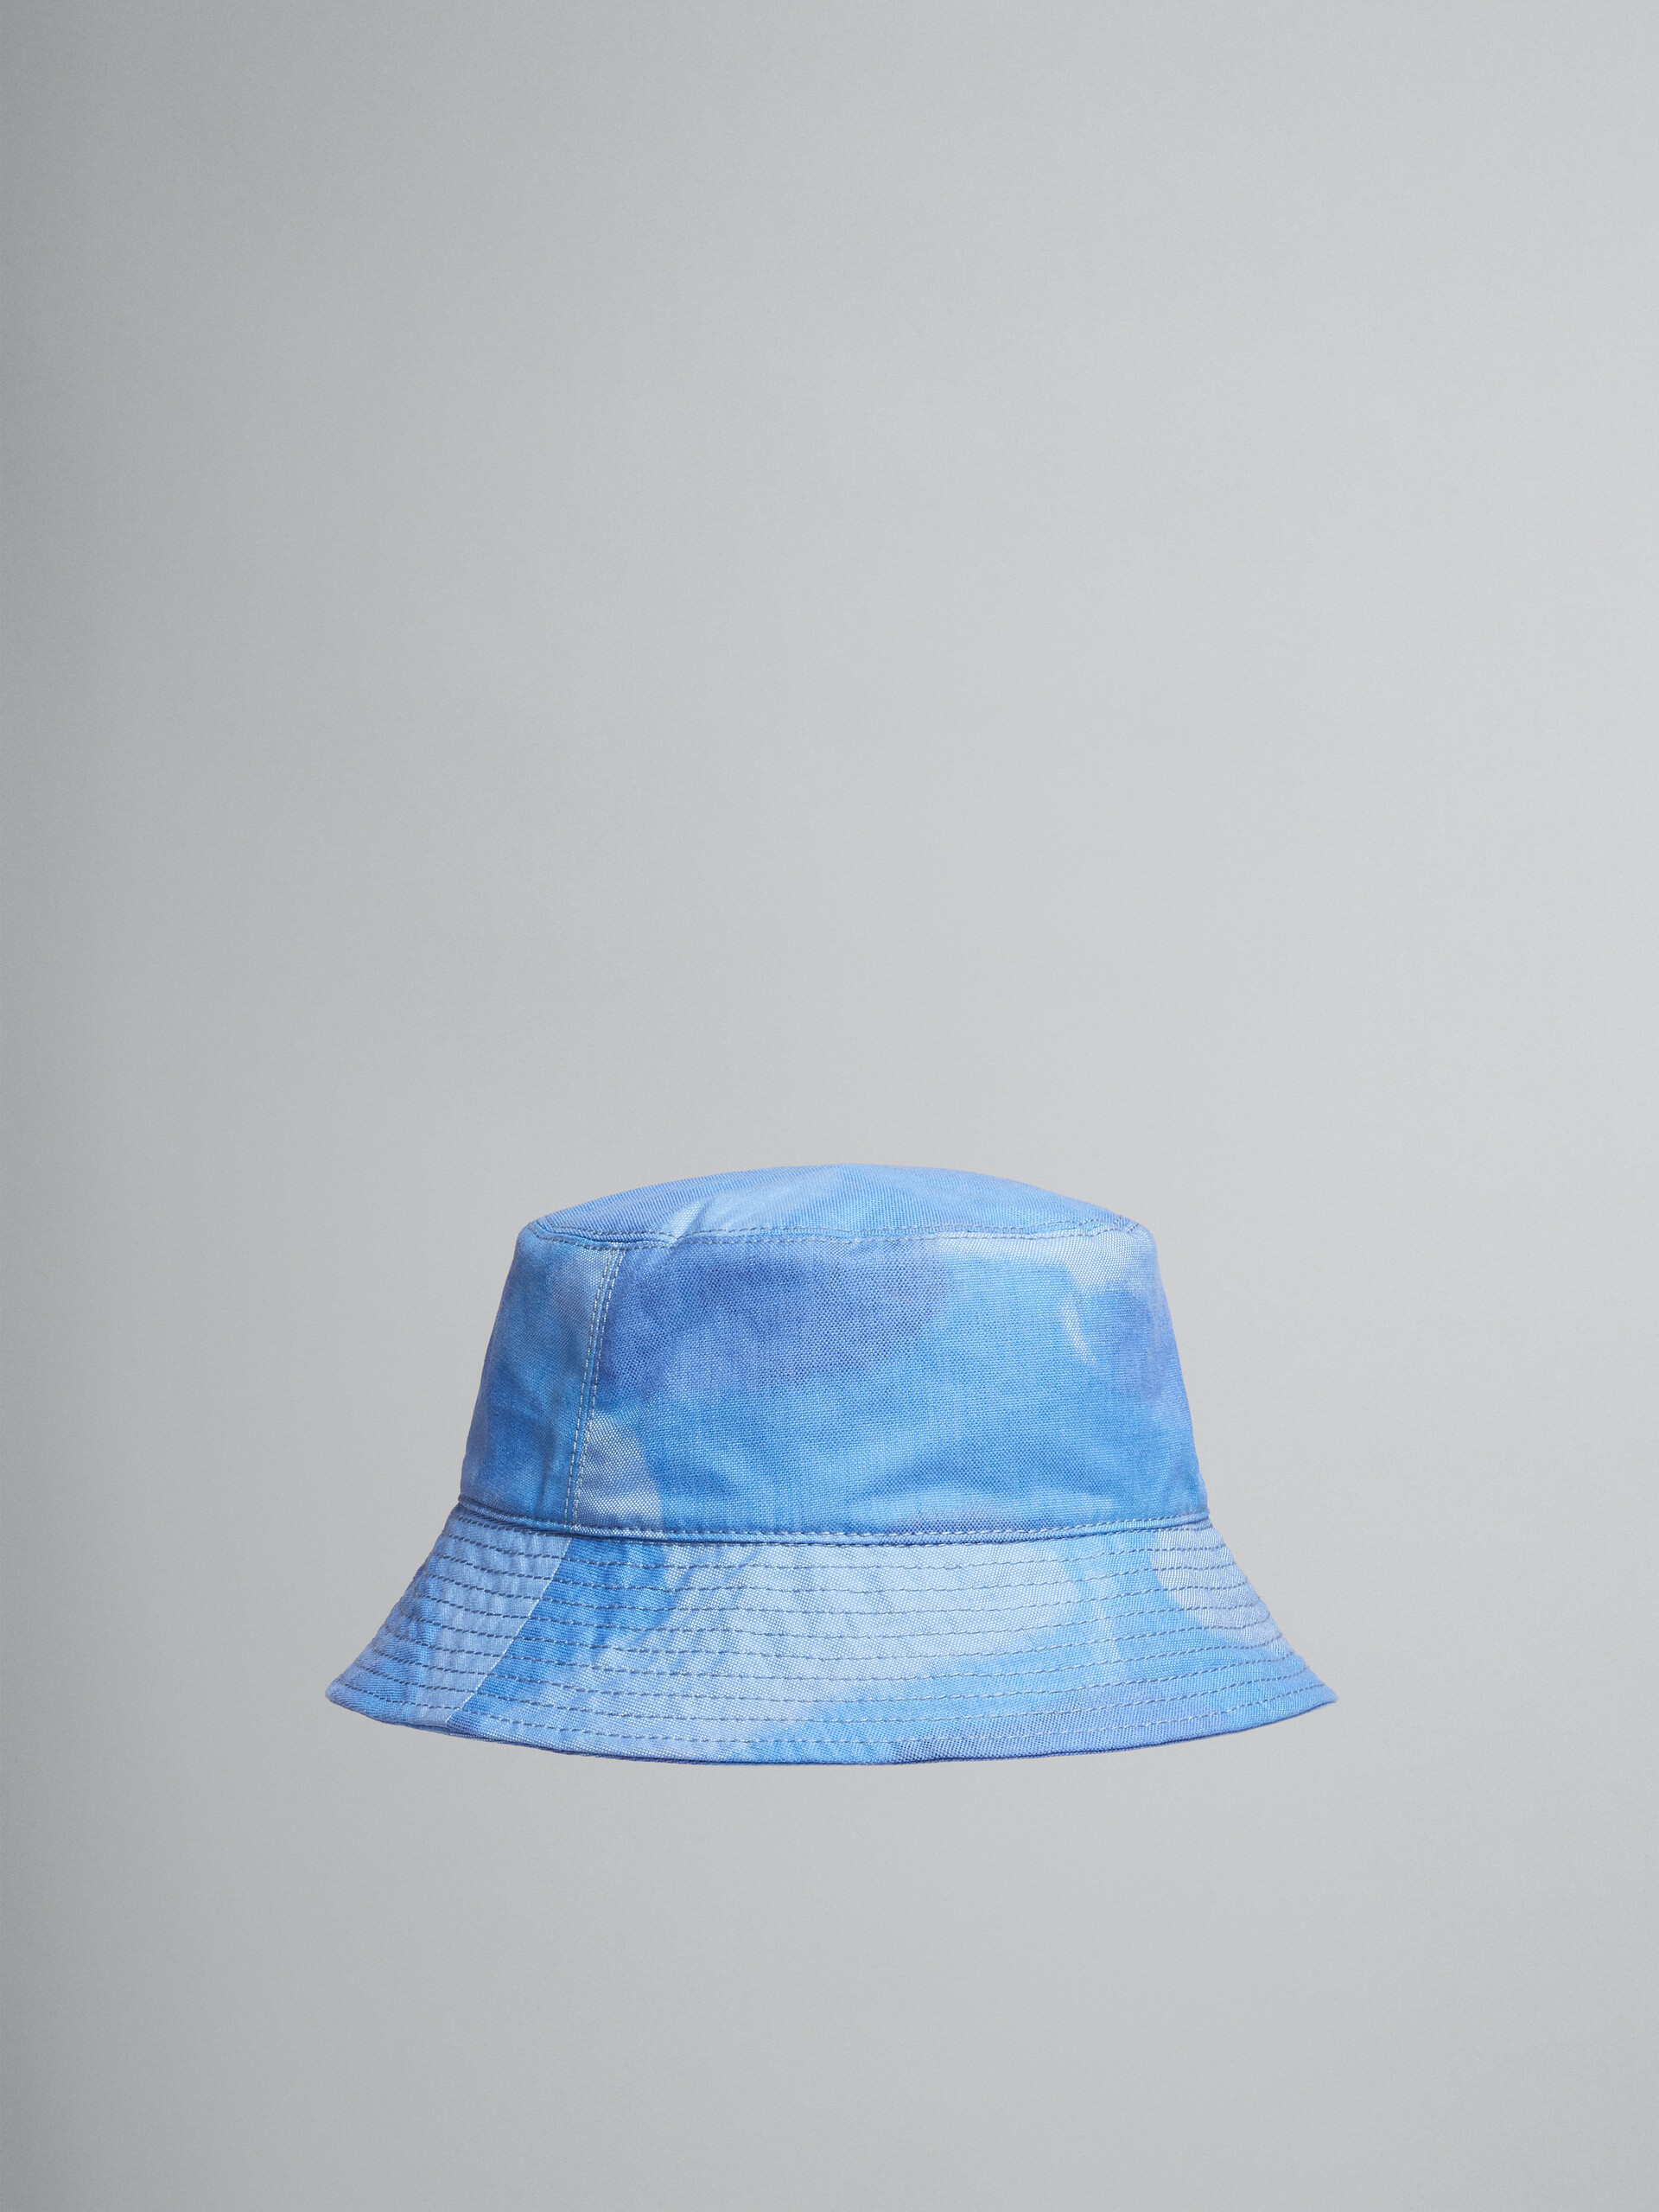 Fischerhut aus Canvas mit hellblauem Wolken-Motiv - Hüte - Image 1